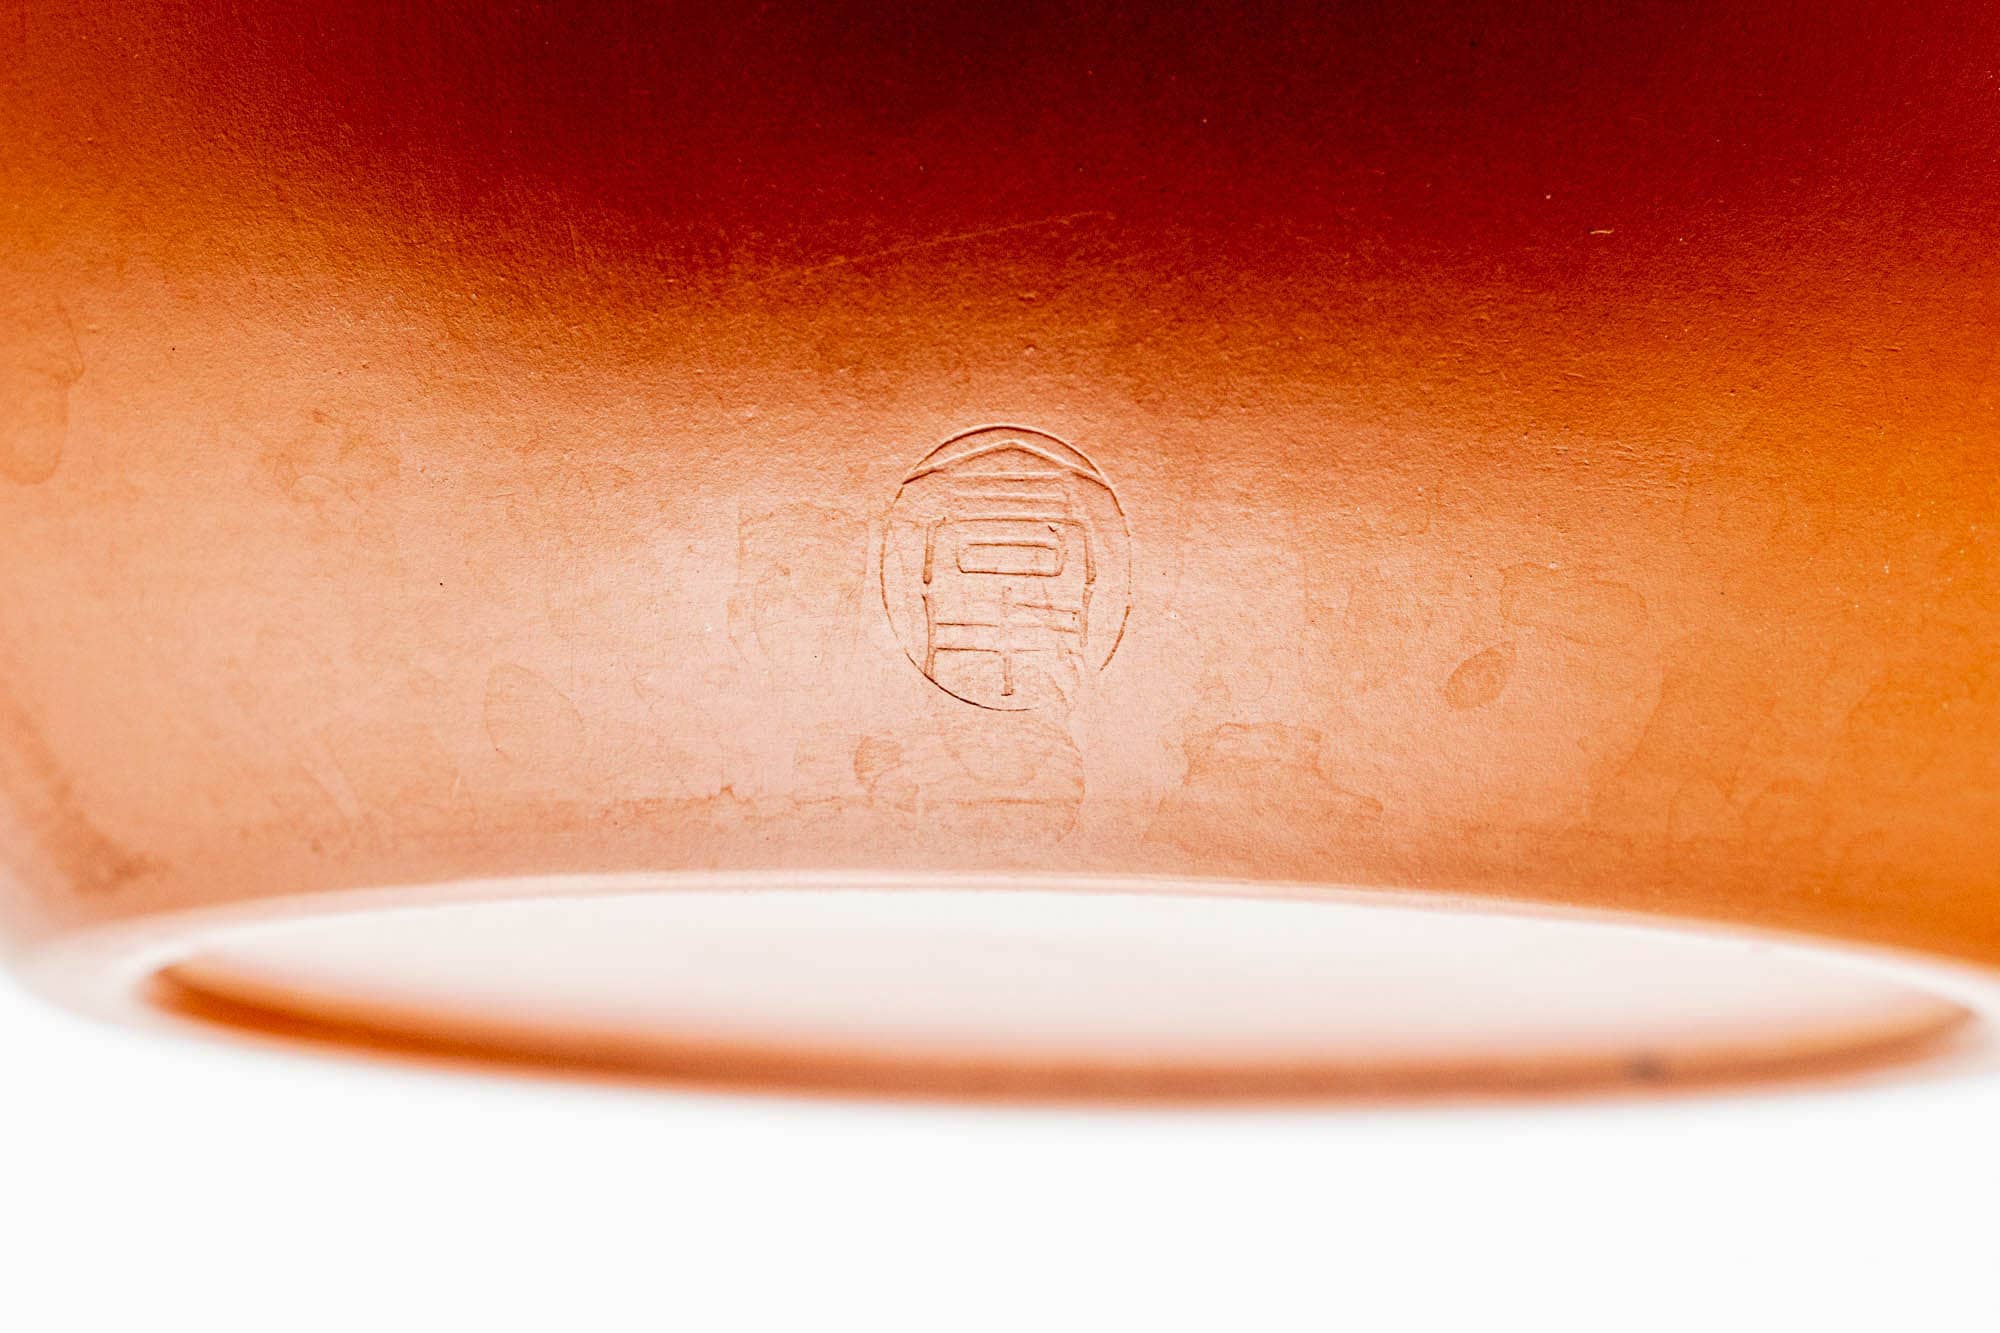 Japanese Kyusu - Calligraphy Engraved Red Shudei Tokoname-yaki Ceramic Filter Teapot - 350ml